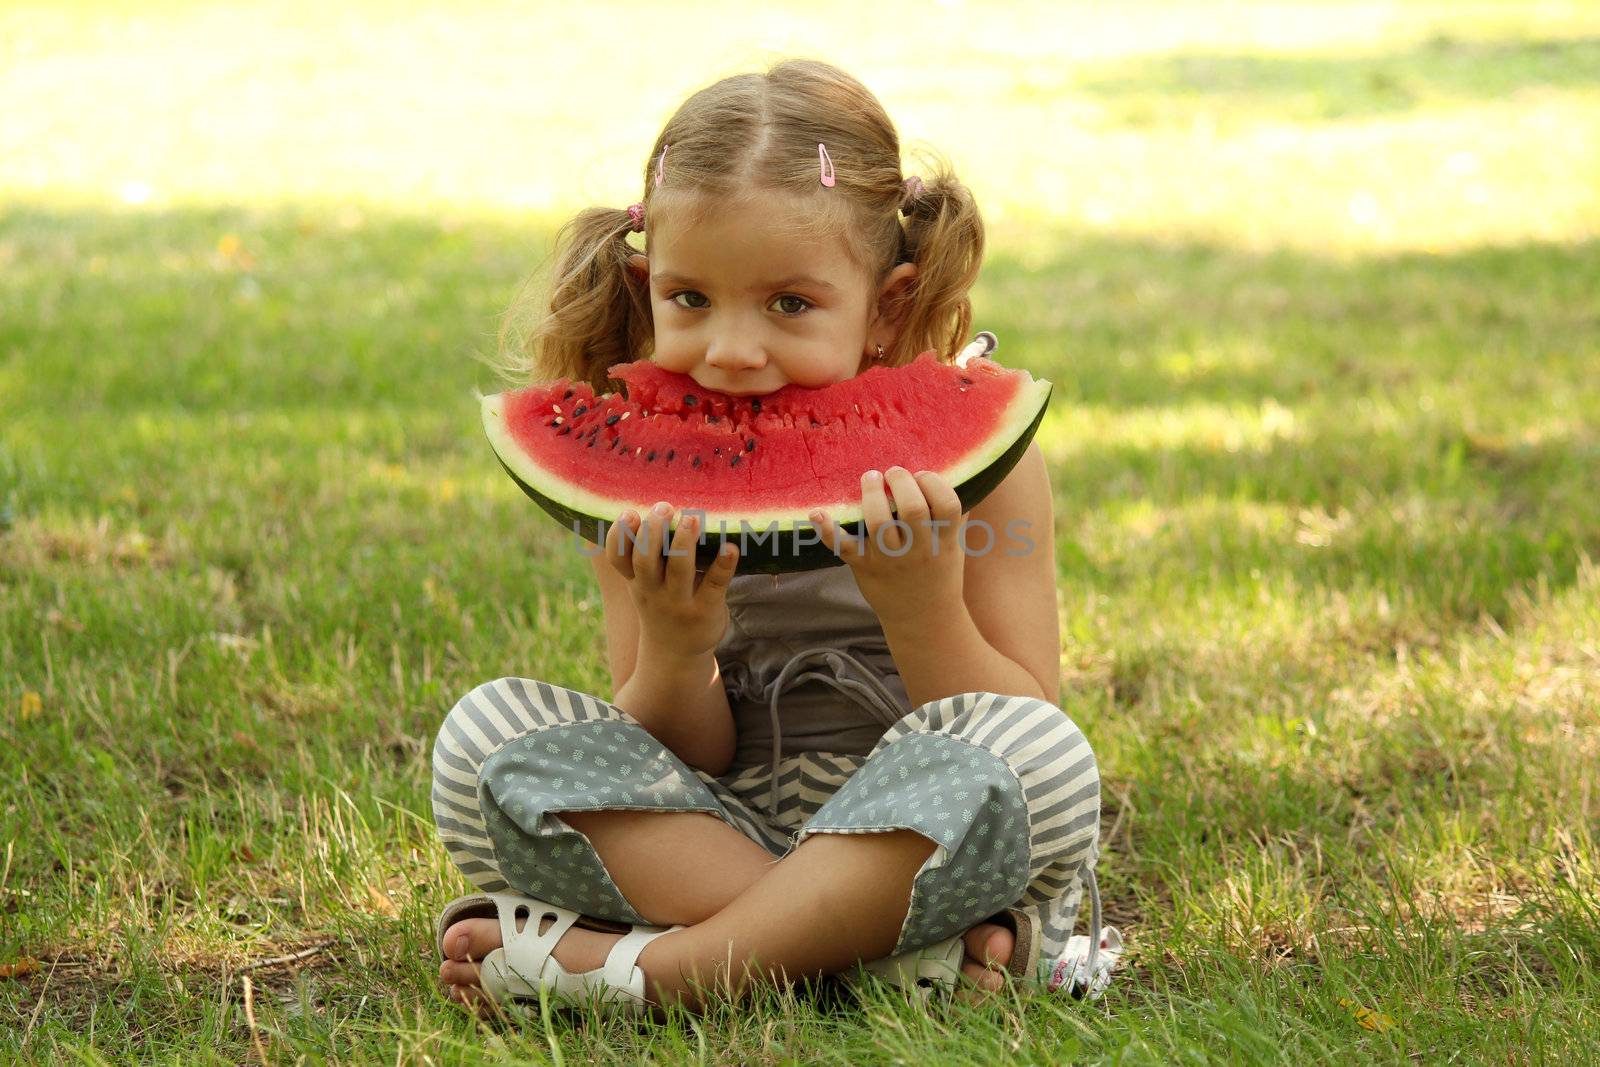 little girl eat watermelon in park by goce